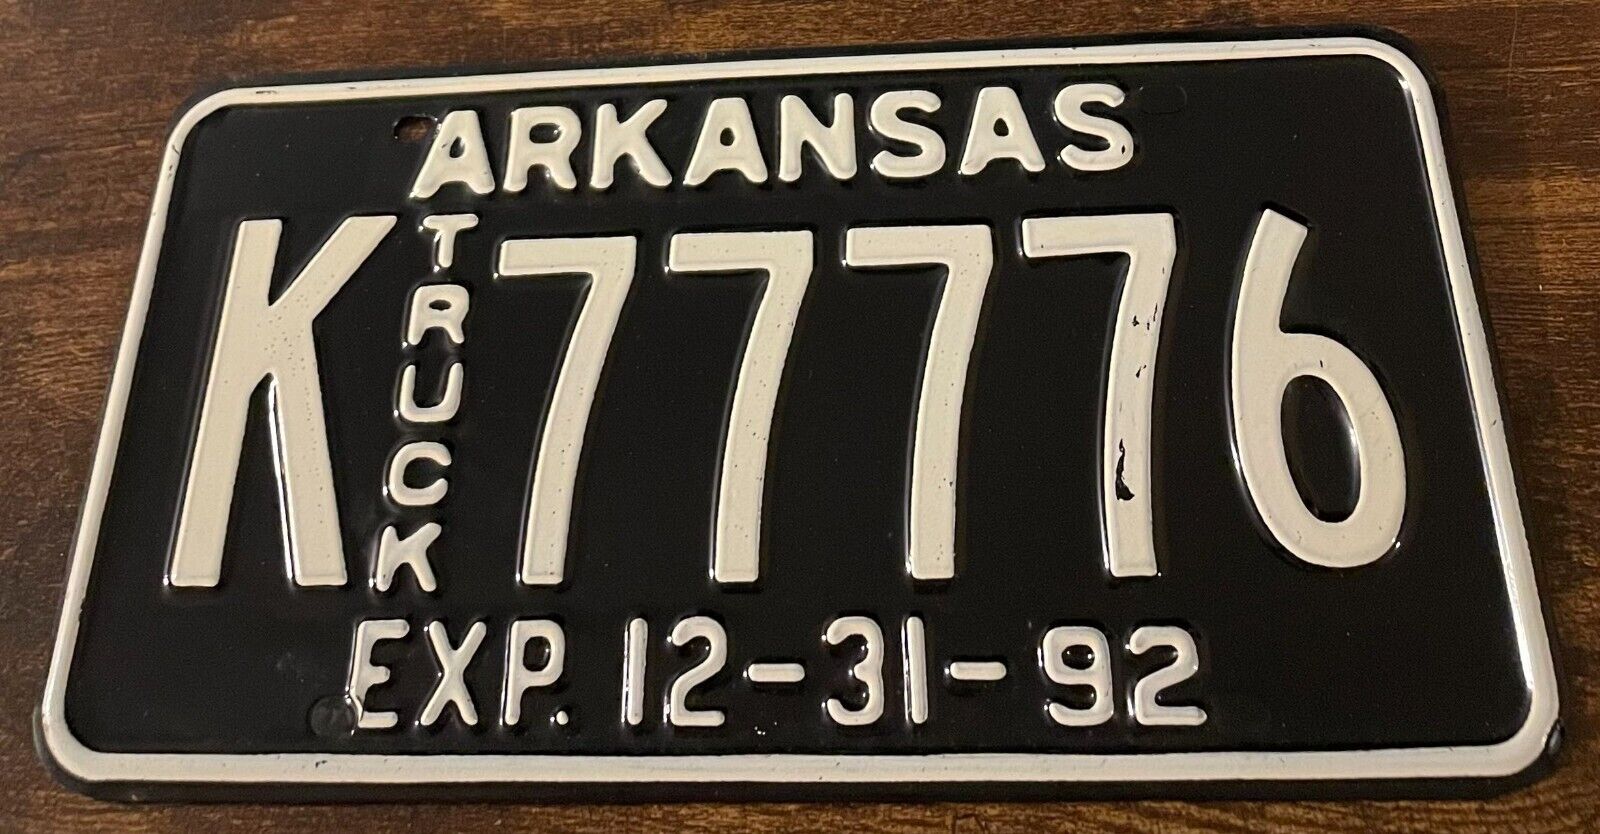 1992 Arkansas Truck License Plate K 77776 Good Numbers 7777 EMBOSSED STEEL